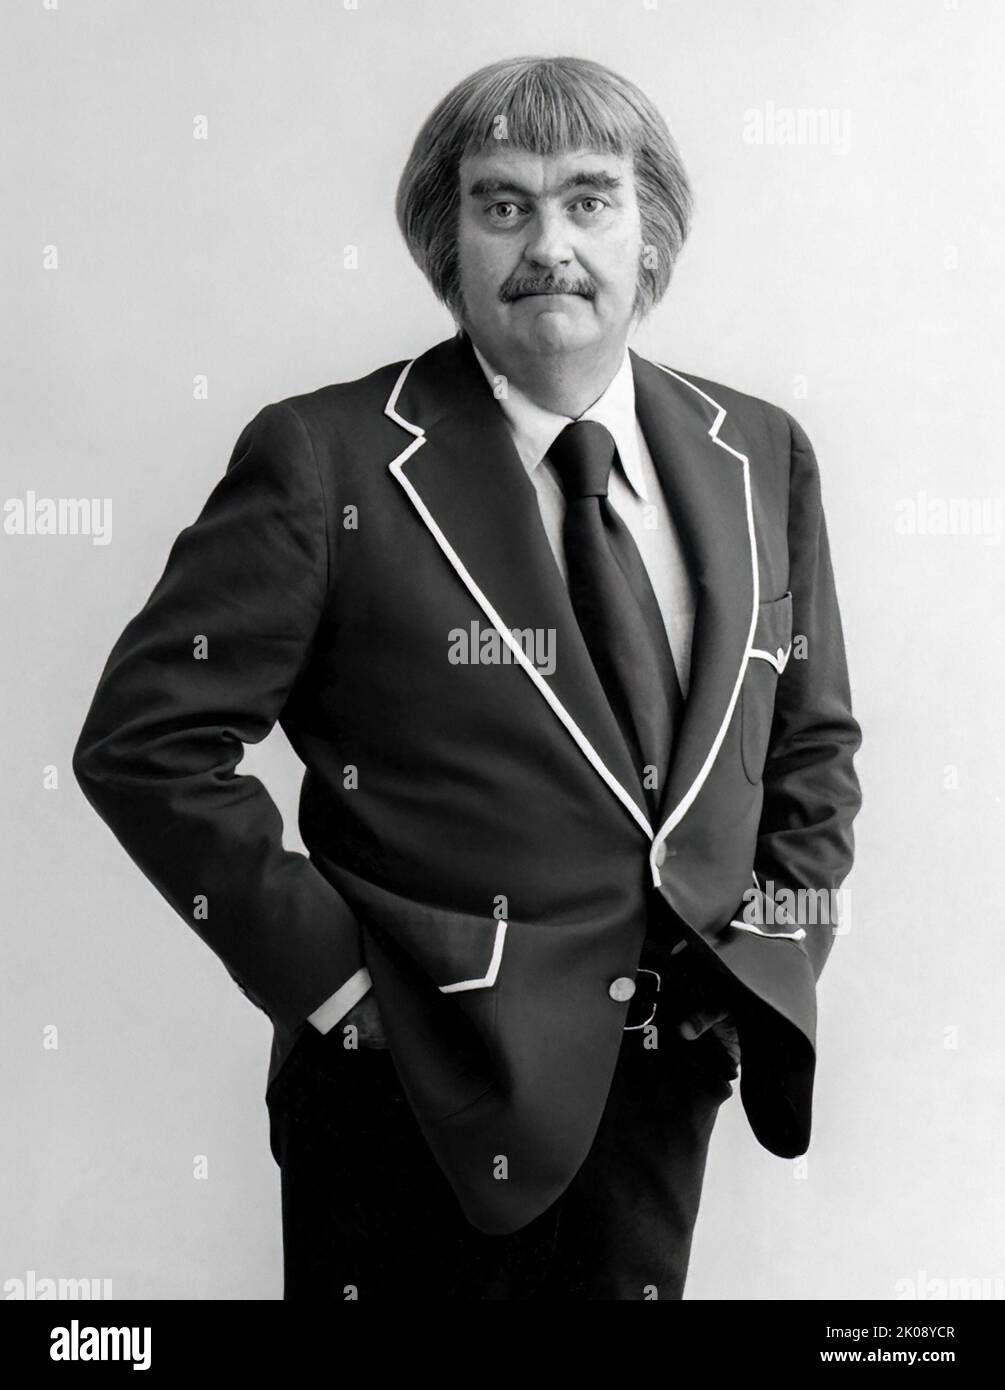 Bob Keeshan en tant que capitaine Kangaroo de la populaire émission pour enfants Captain Kangaroo qui a été diffusée de 1955 à 1984. Photo : 1977. (ÉTATS-UNIS) Banque D'Images